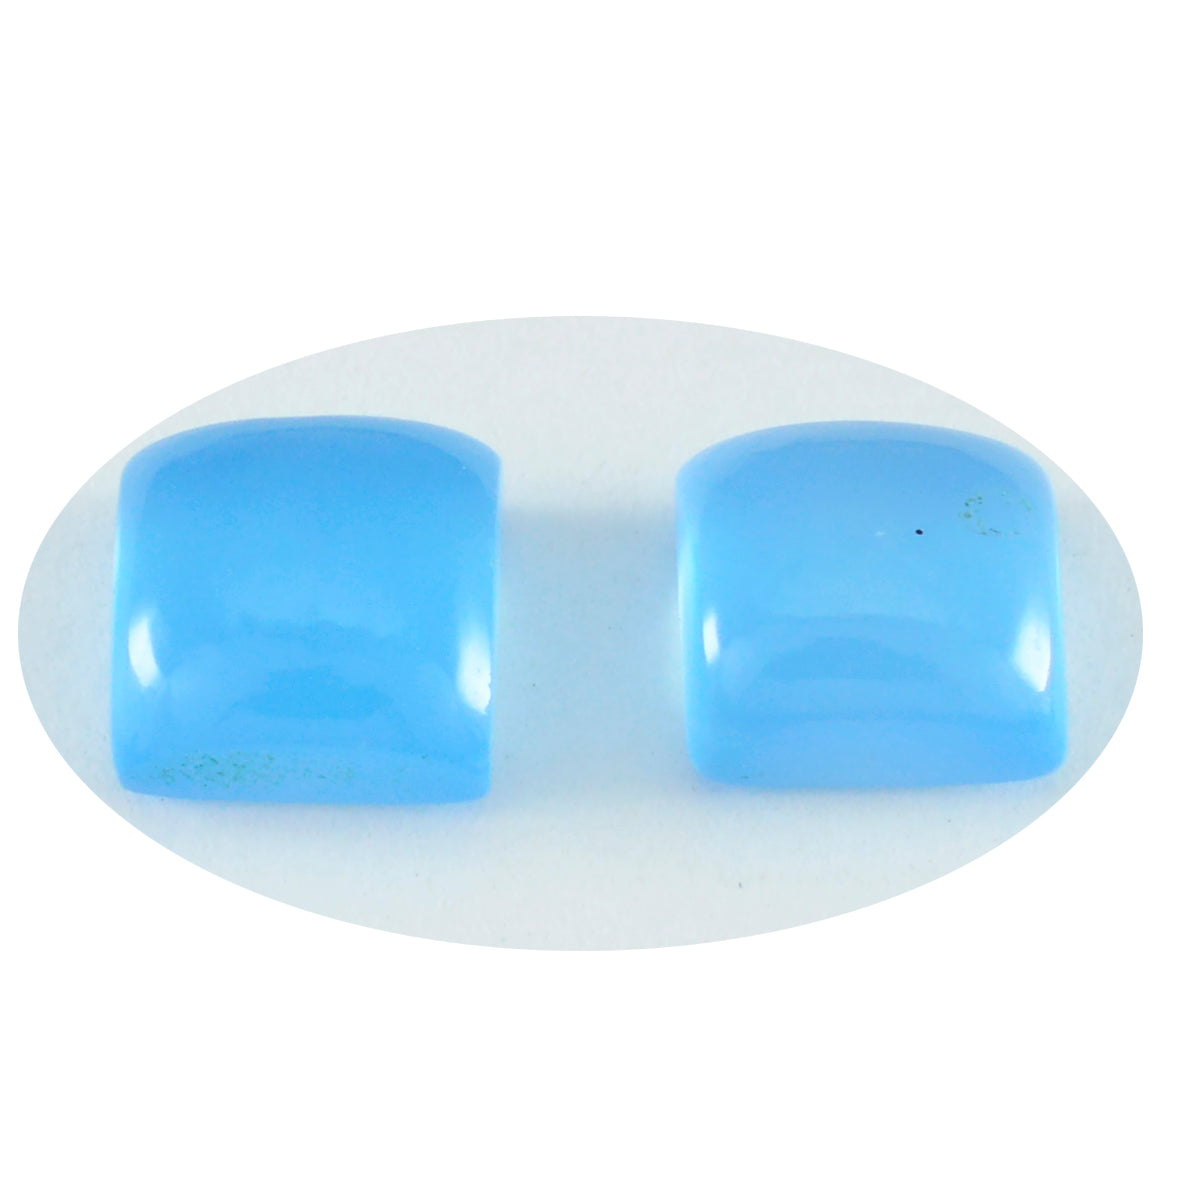 Riyogems 1PC blauwe chalcedoon cabochon 10x10 mm vierkante vorm mooie kwaliteit losse edelsteen